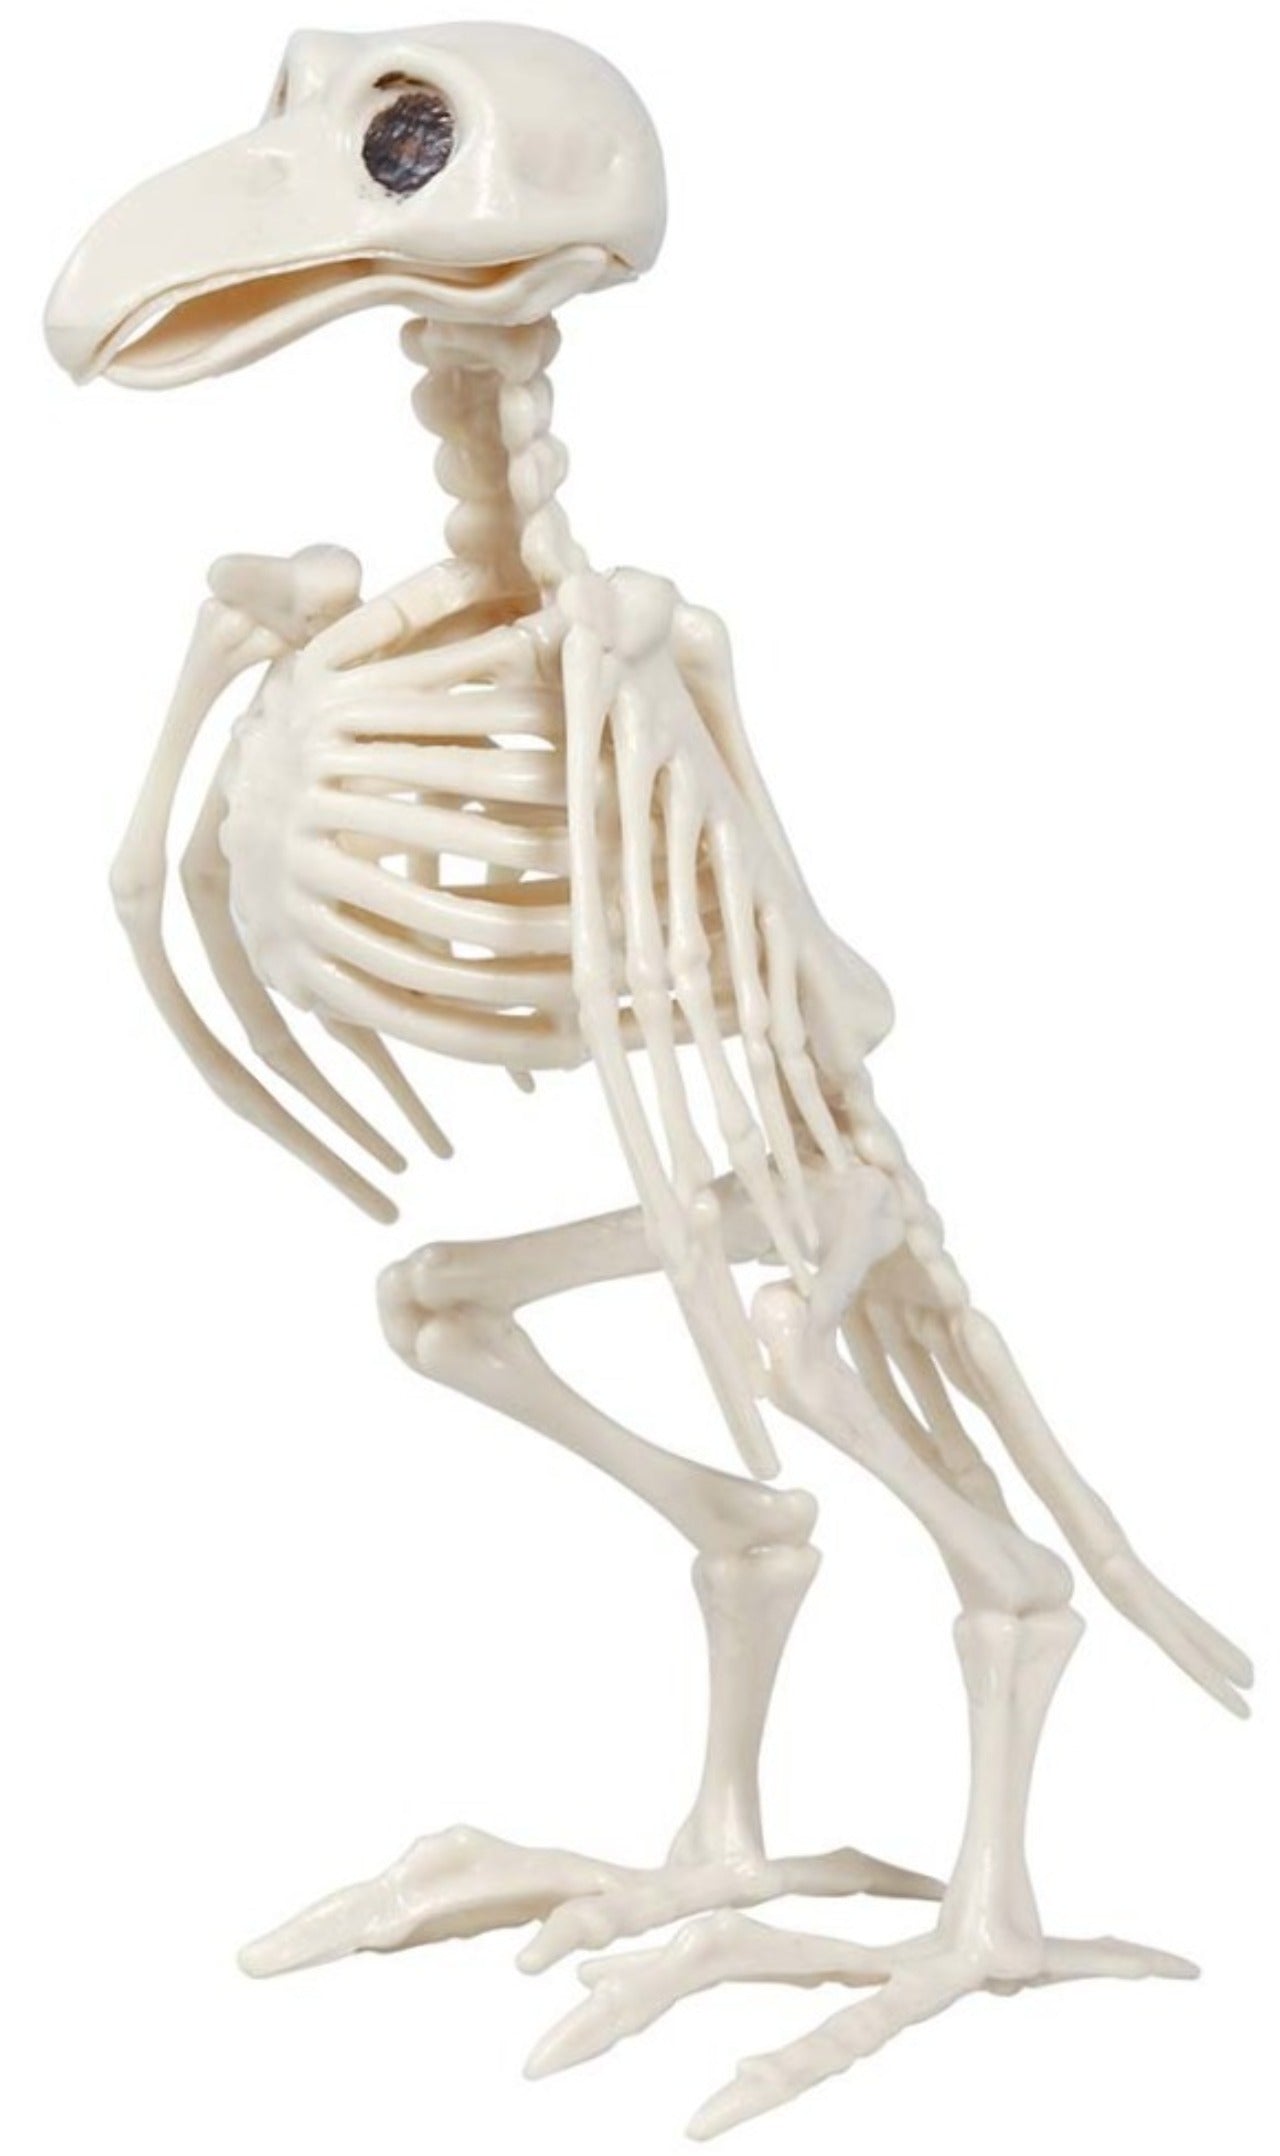 Esqueleto de Cuervo